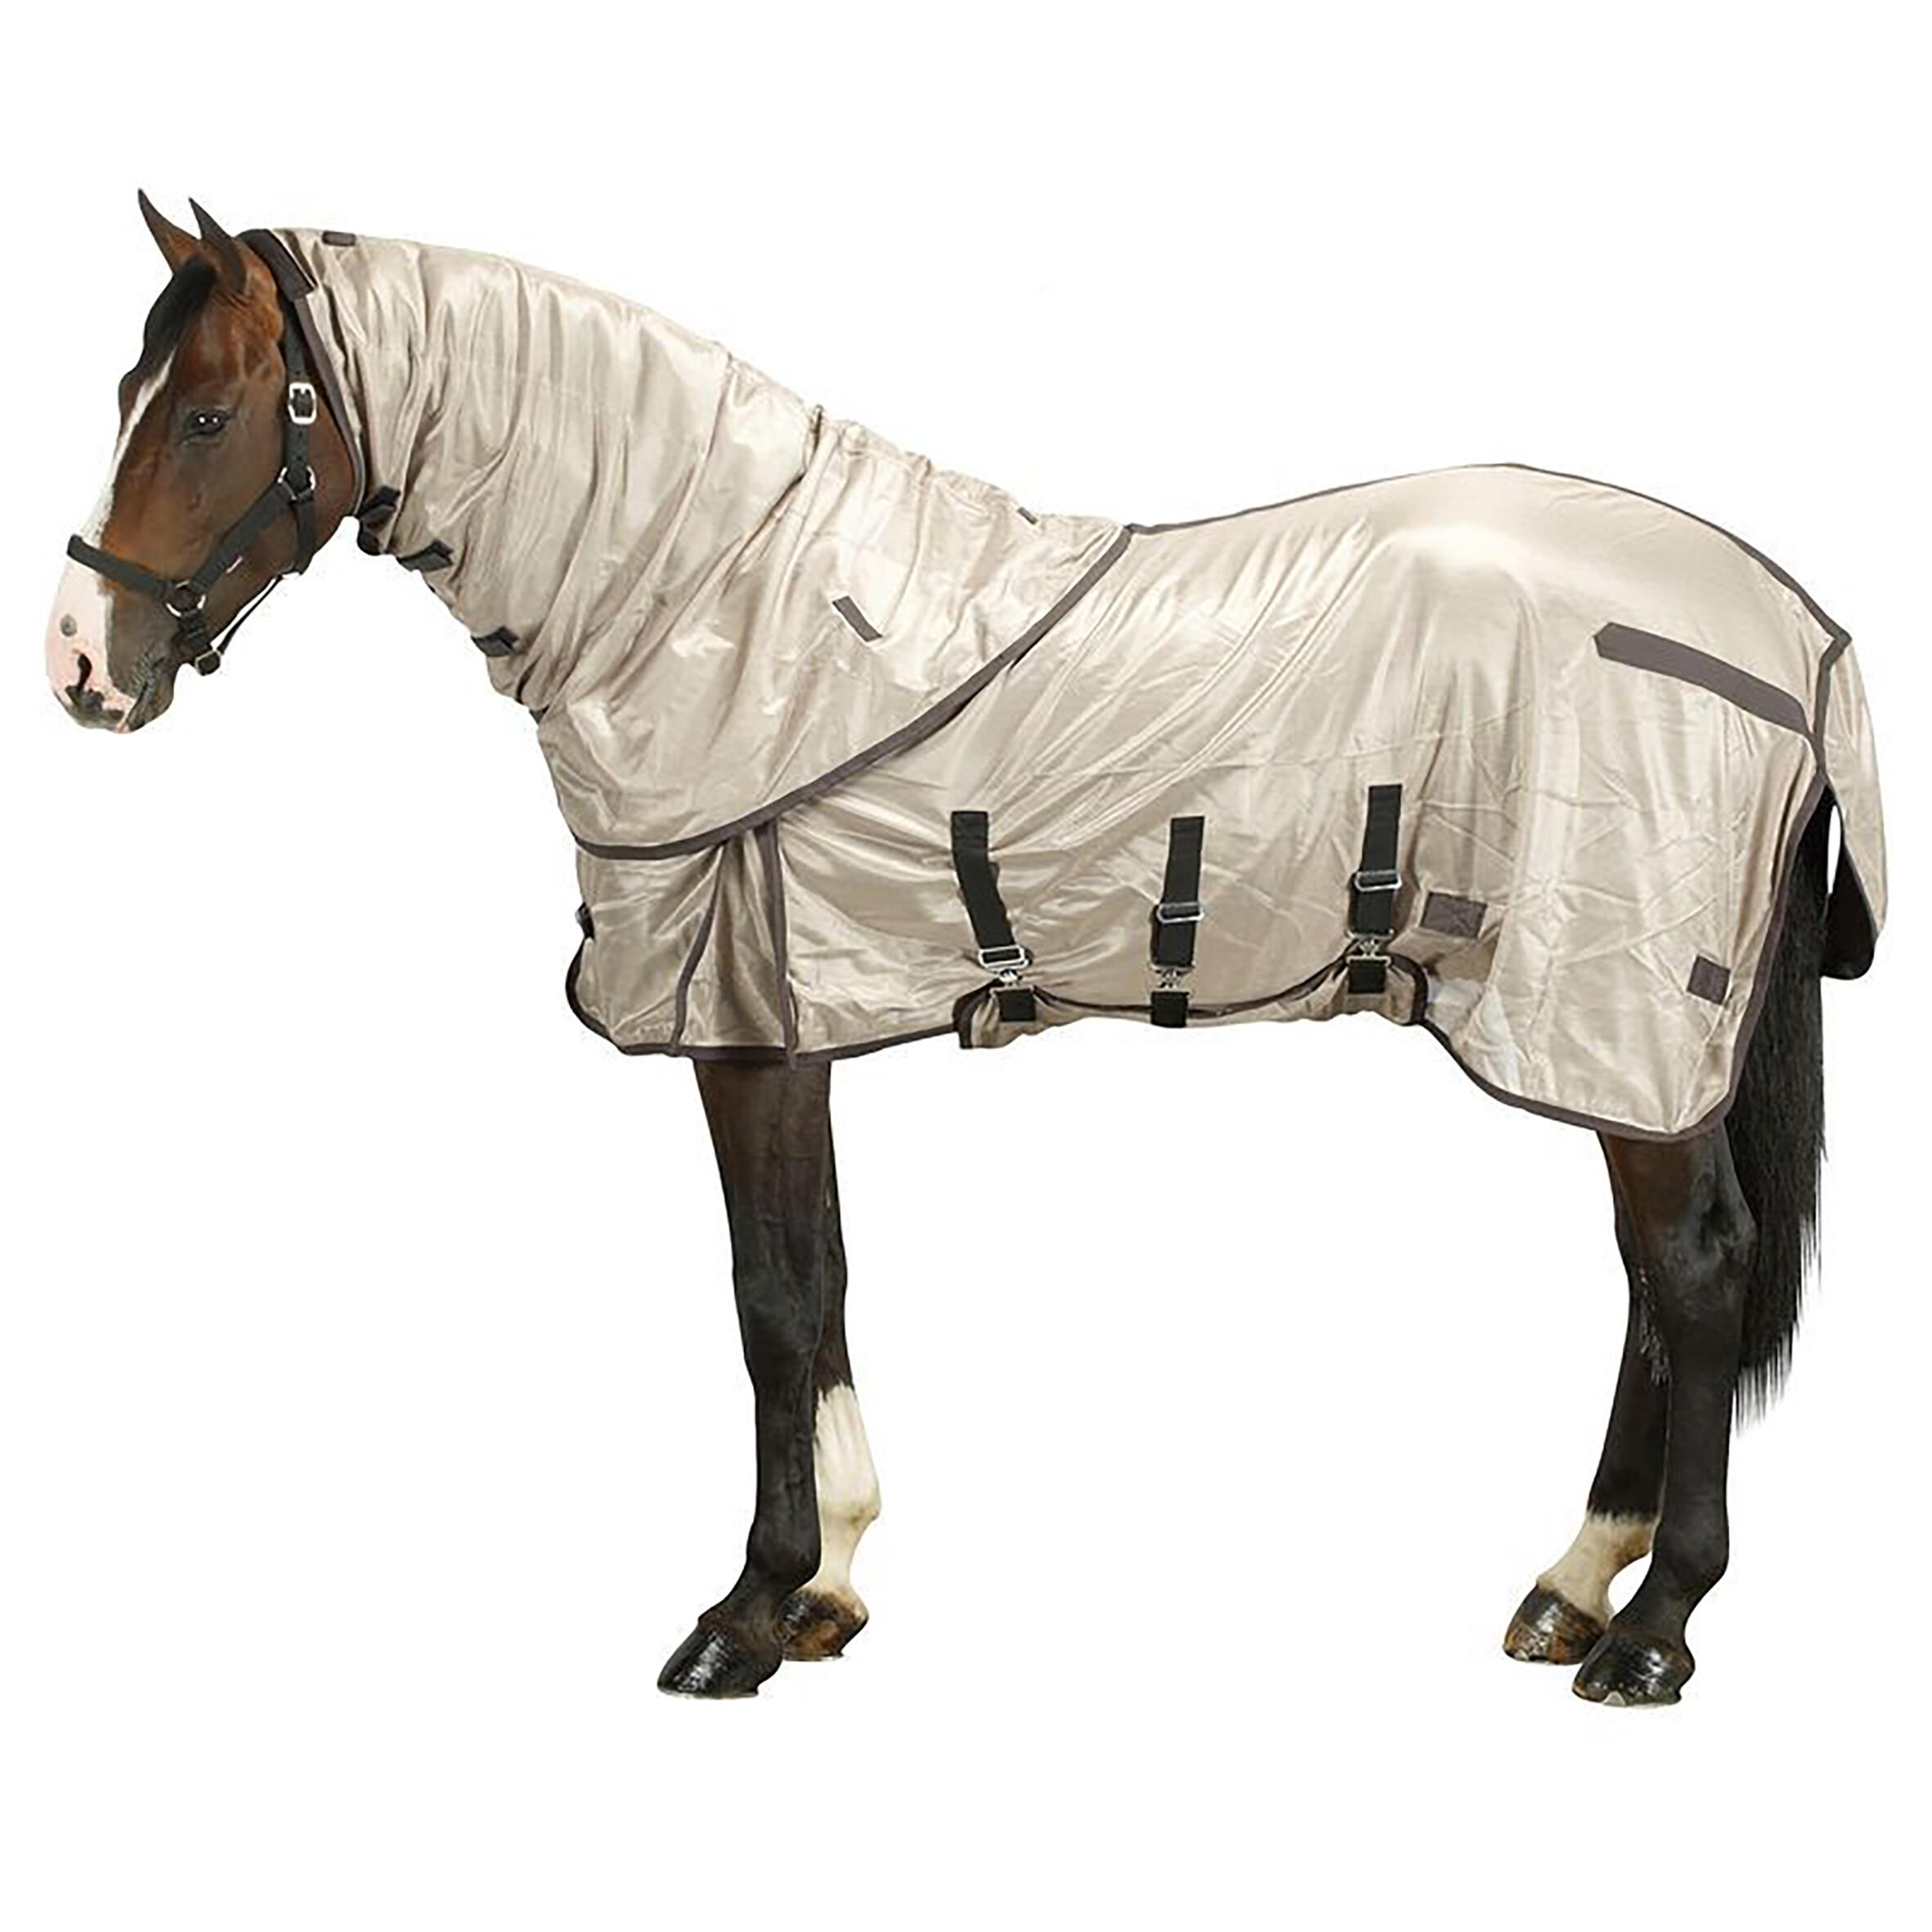 Pătură Protecţie Insecte echitație cai/ponei Bej